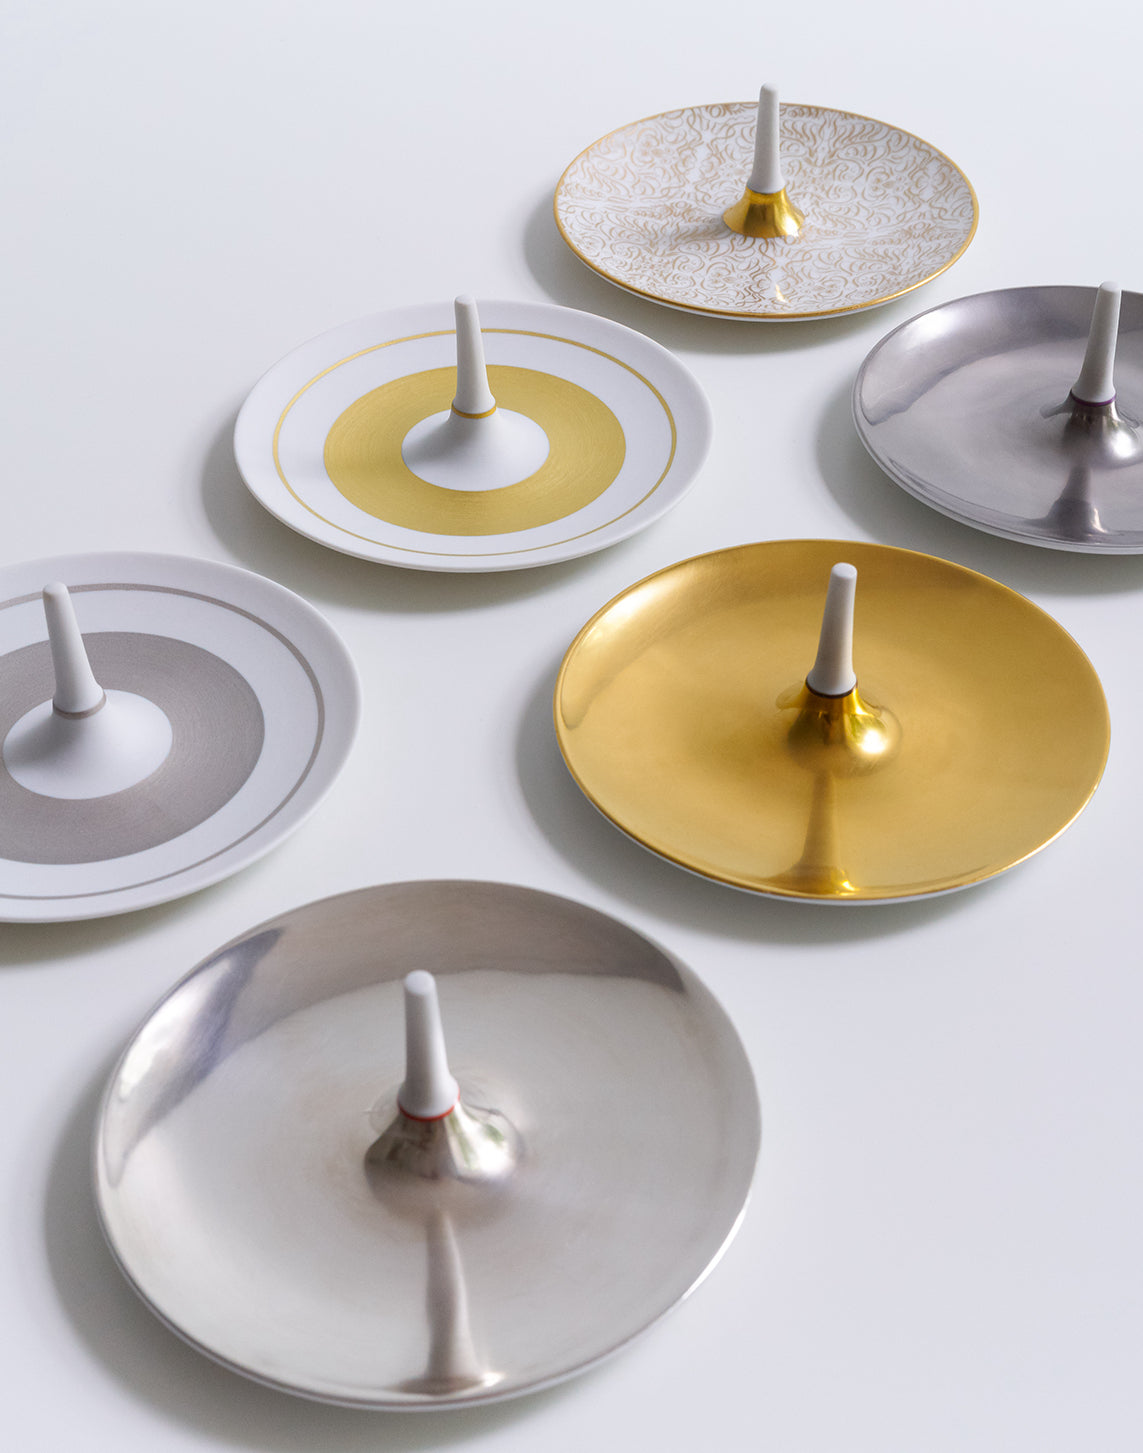 Eine Auswahl an dekorativen Tellern mit zentralen Vorsprüngen, die auf einer glatten Oberfläche angeordnet sind und verschiedene Designs und metallische Oberflächen aufweisen.